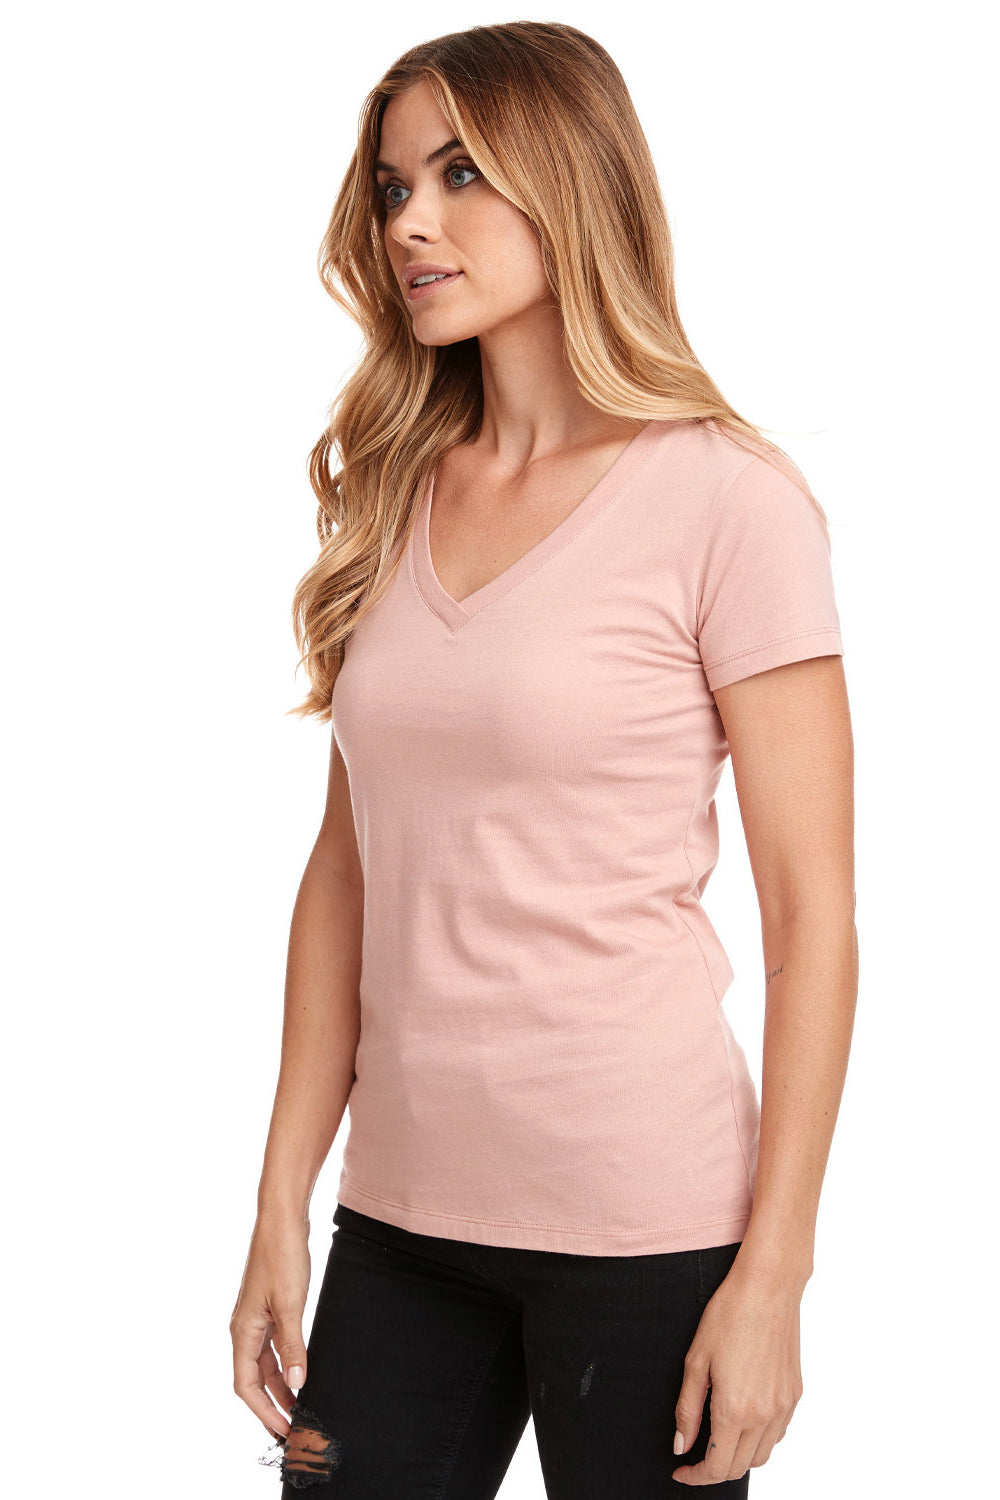 Next Level N1540/1540 Womens Ideal Jersey Short Sleeve V-Neck T-Shirt Desert Pink 3Q